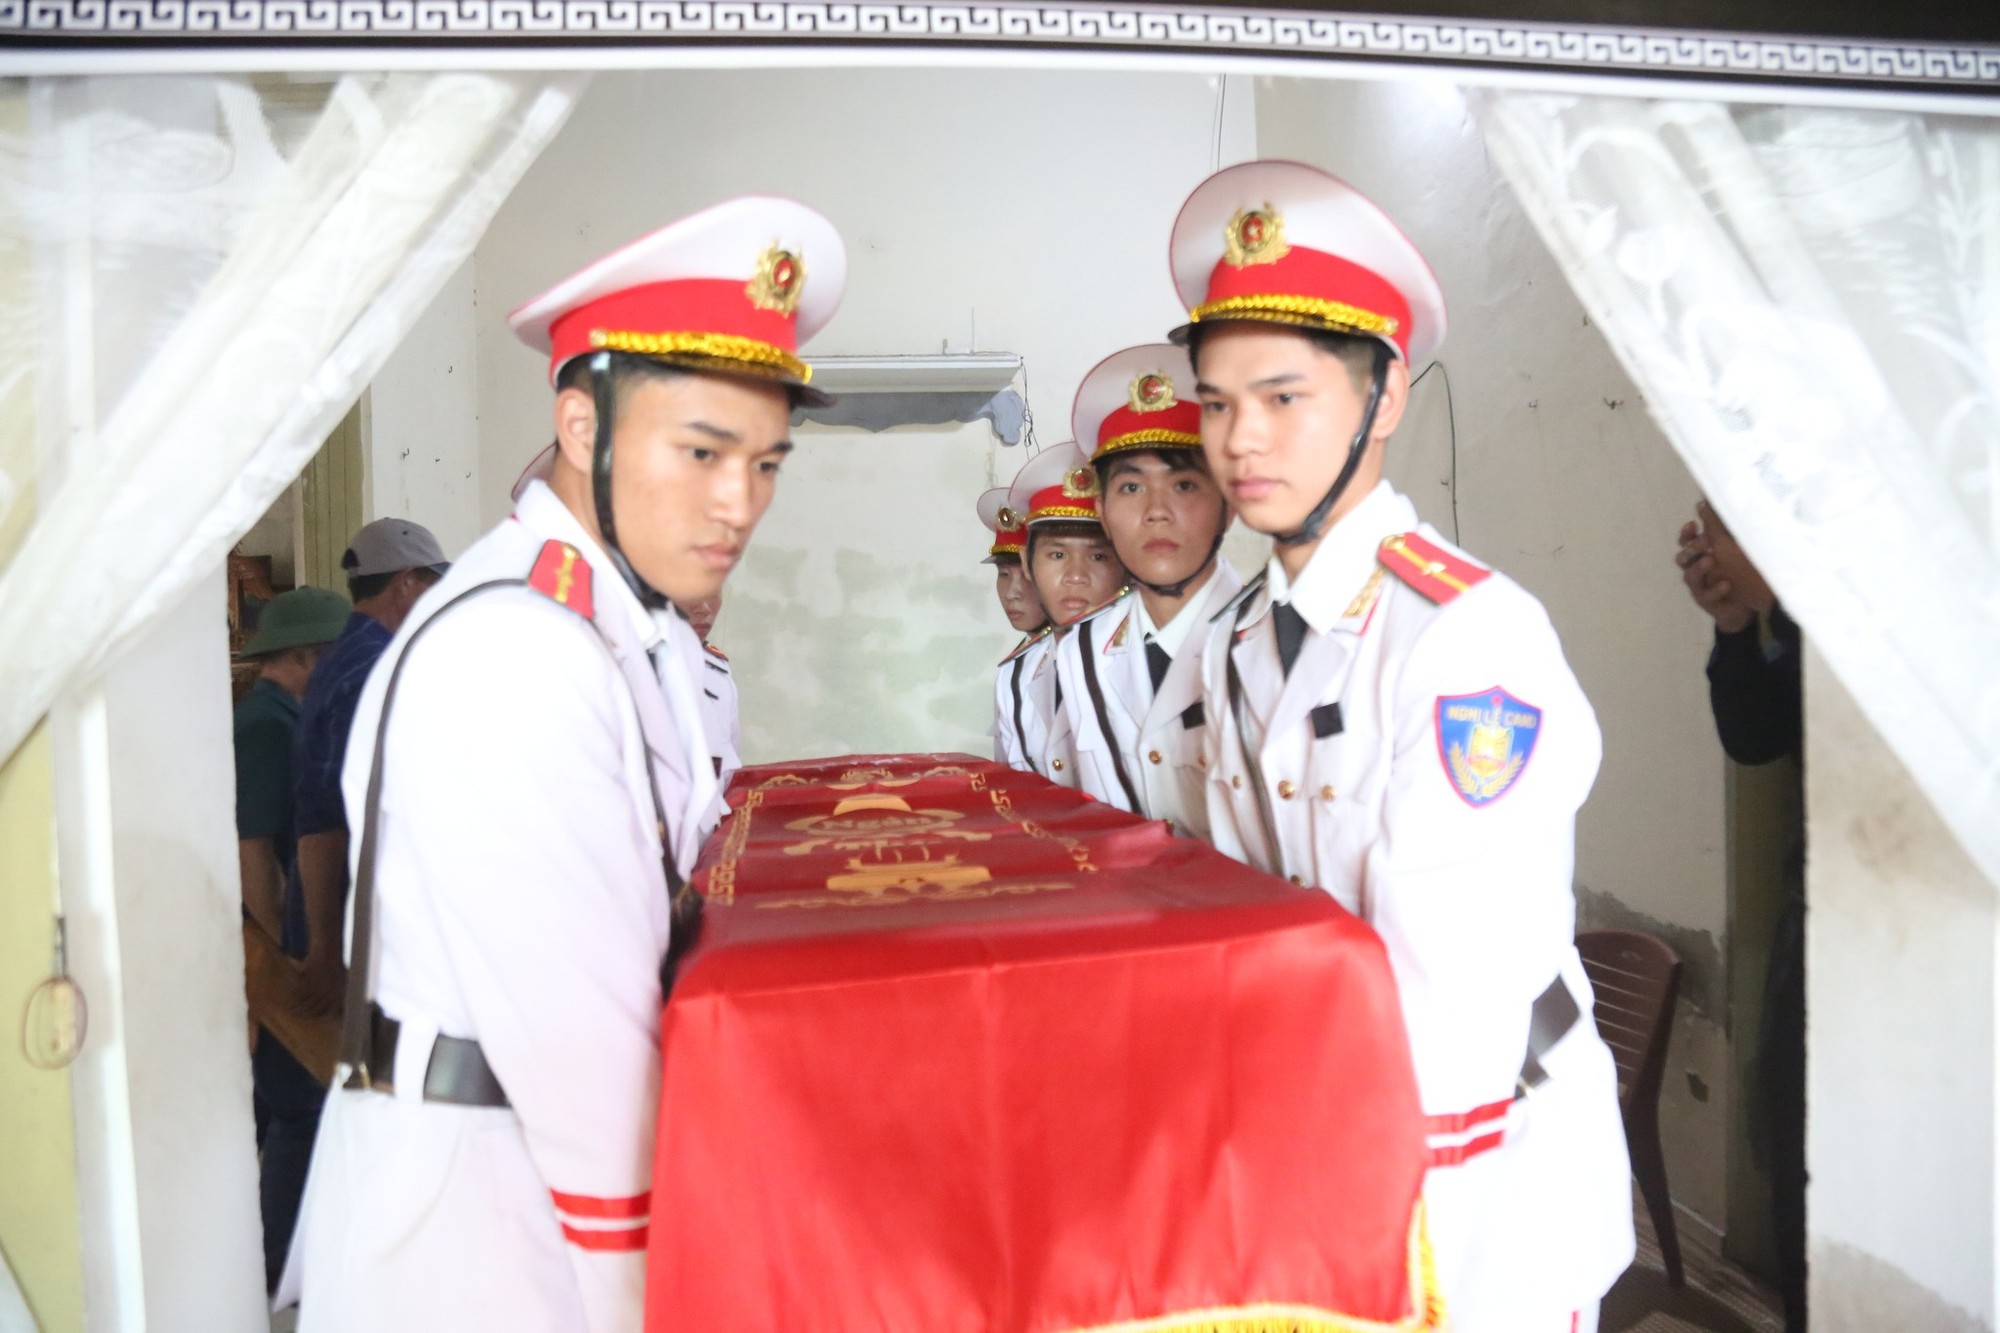 Xúc động lễ tiễn đưa Đại úy công an hy sinh khi làm nhiệm vụ ở Hà Tĩnh - Ảnh 11.